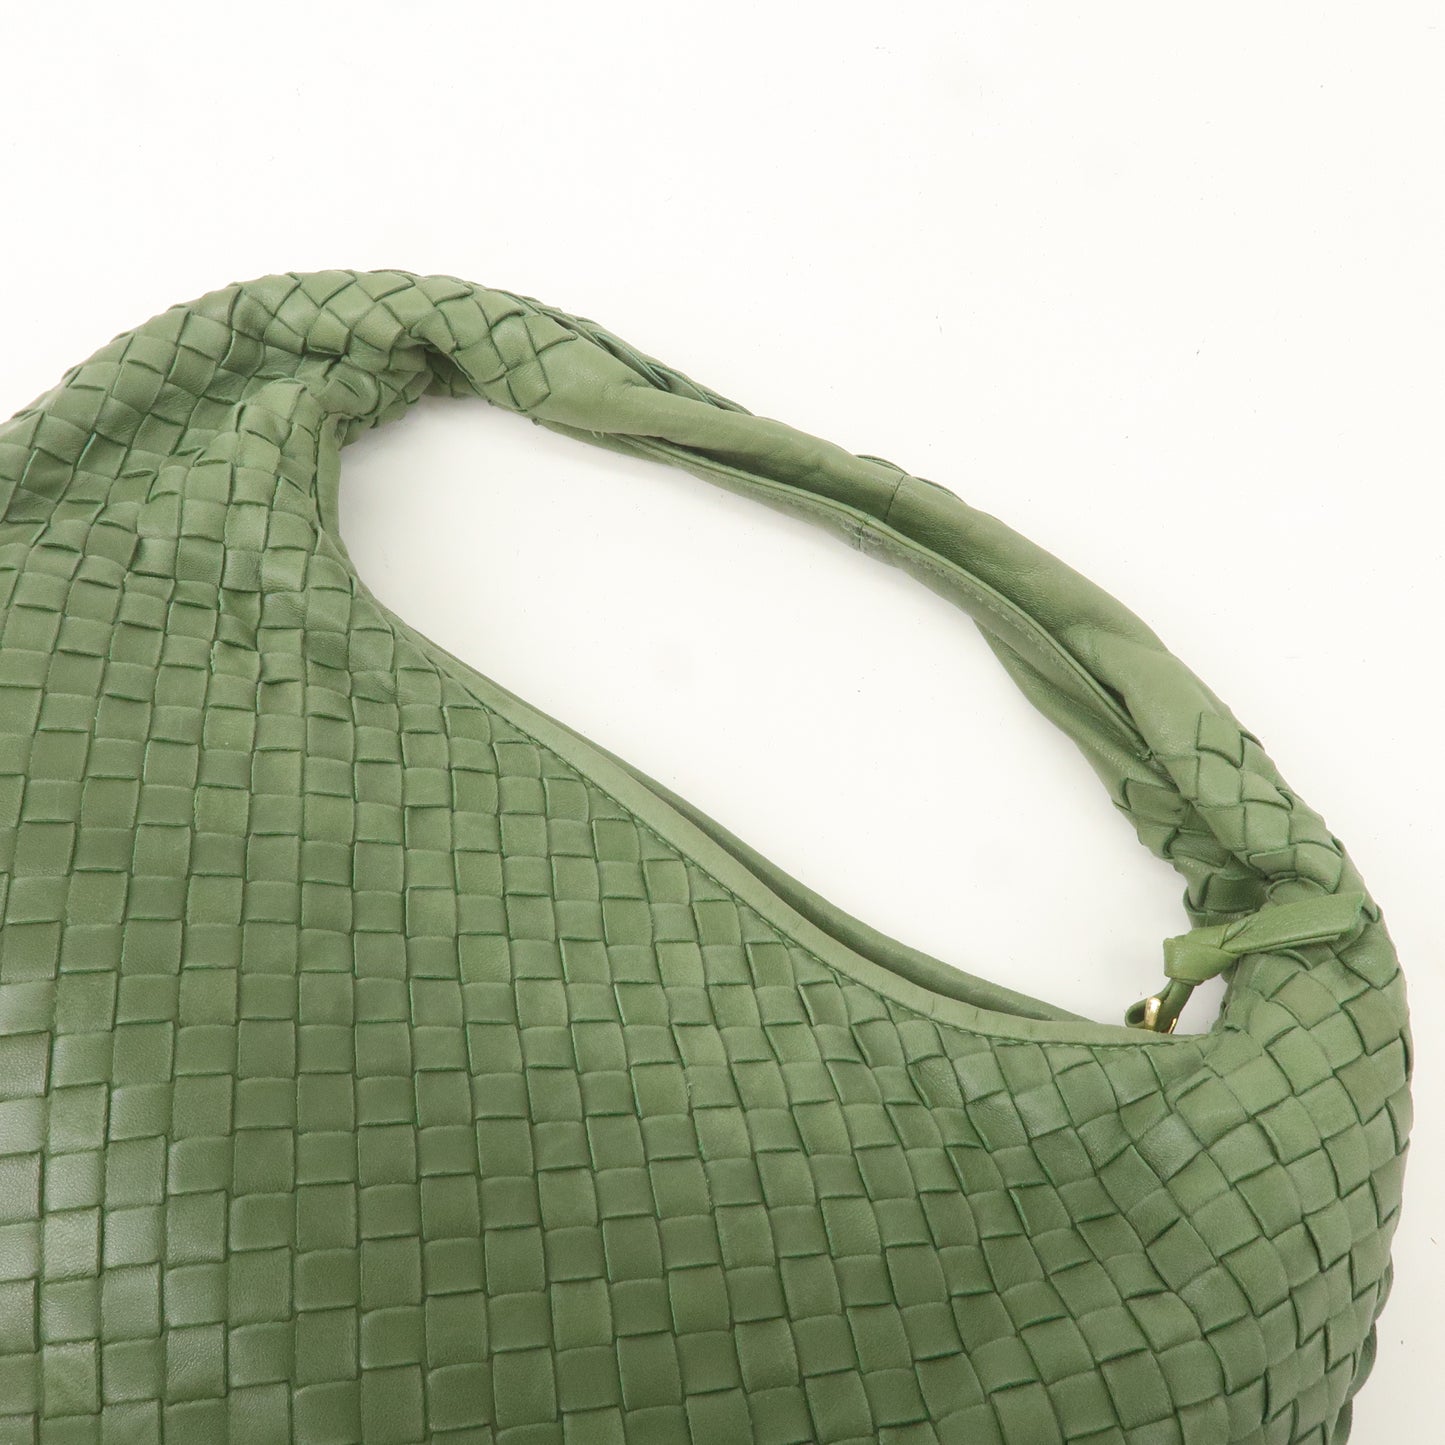 BOTTEGA VENETA Intrecciato Leather Hobo Shoulder Bag Green 115653